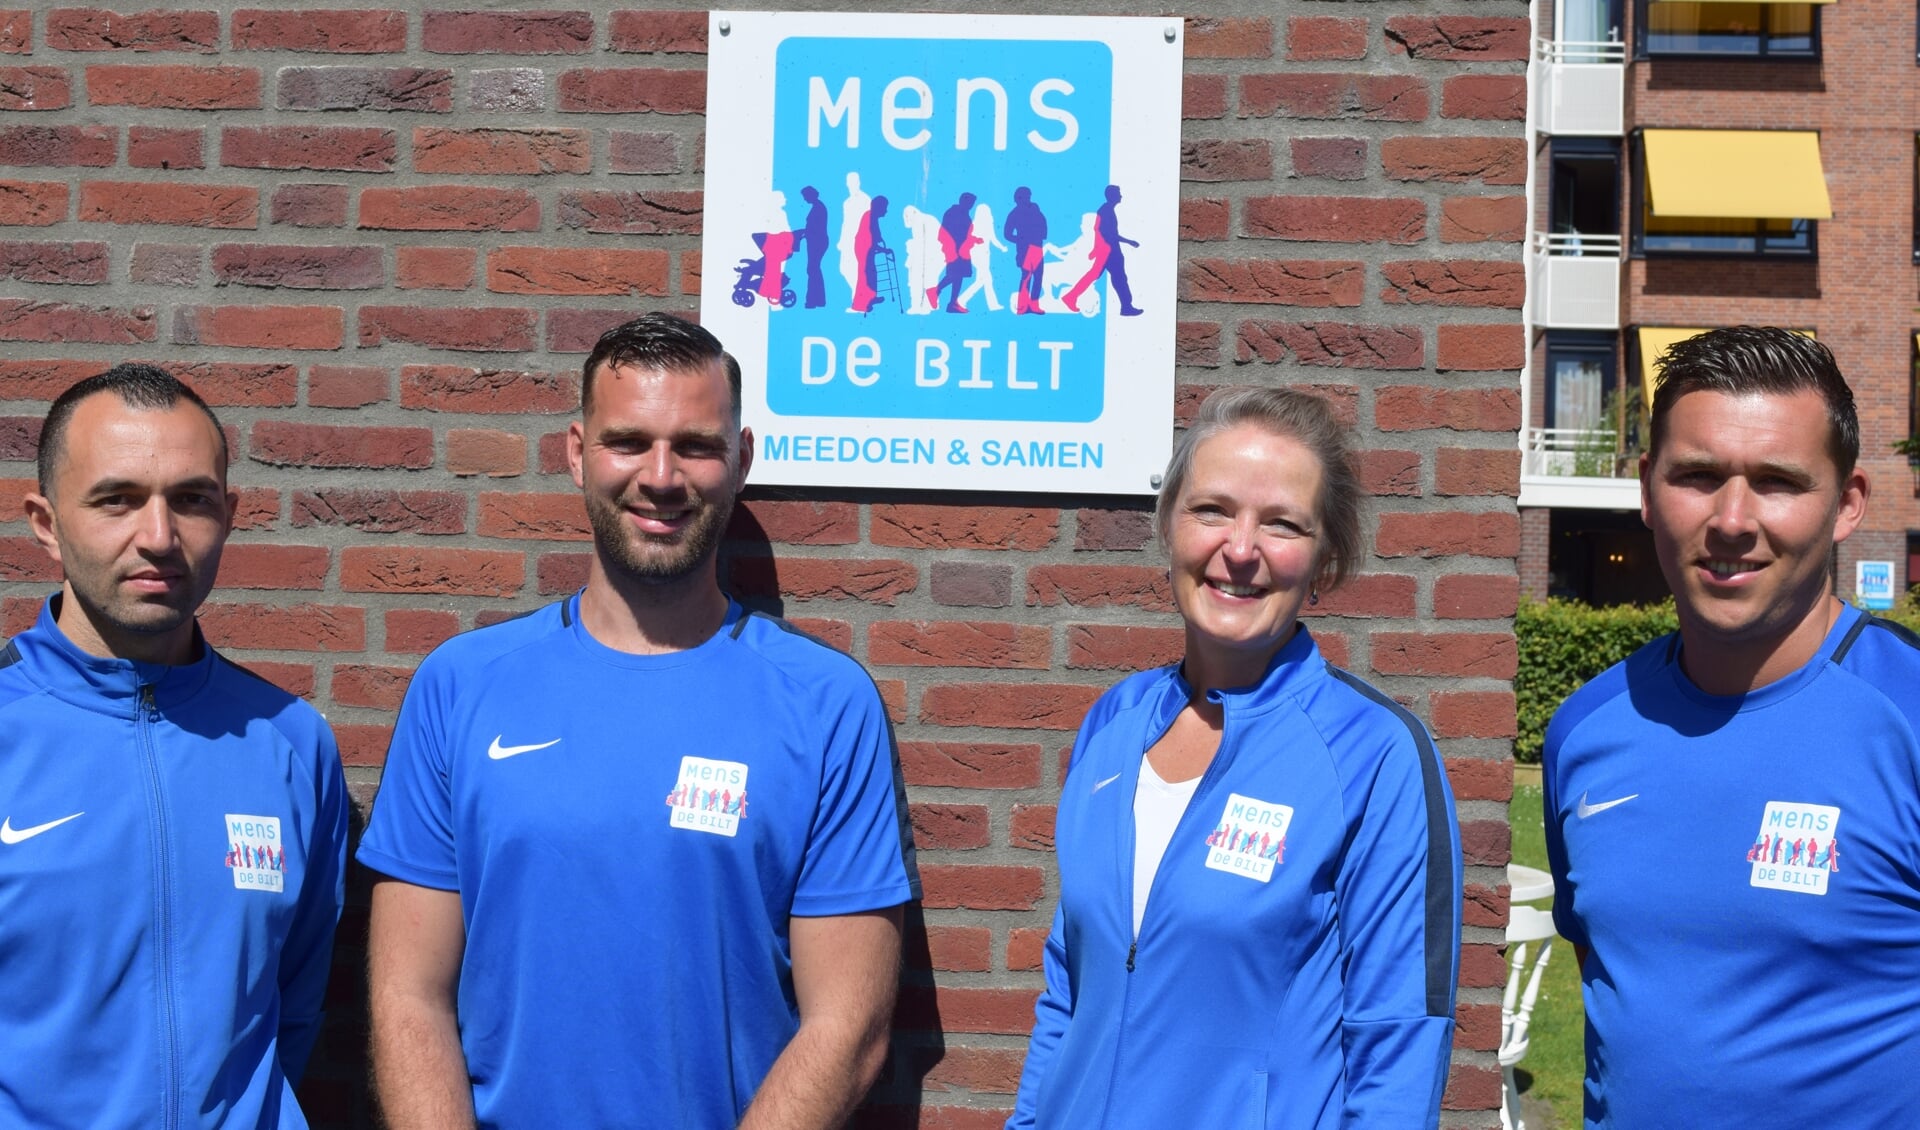 Buurtsportcoaches geven graag advies over de sportmogelijkheden binnen de gemeente De Bilt; v.l.n.r. Mo, Niels, teamleidster Merije en Maikel.